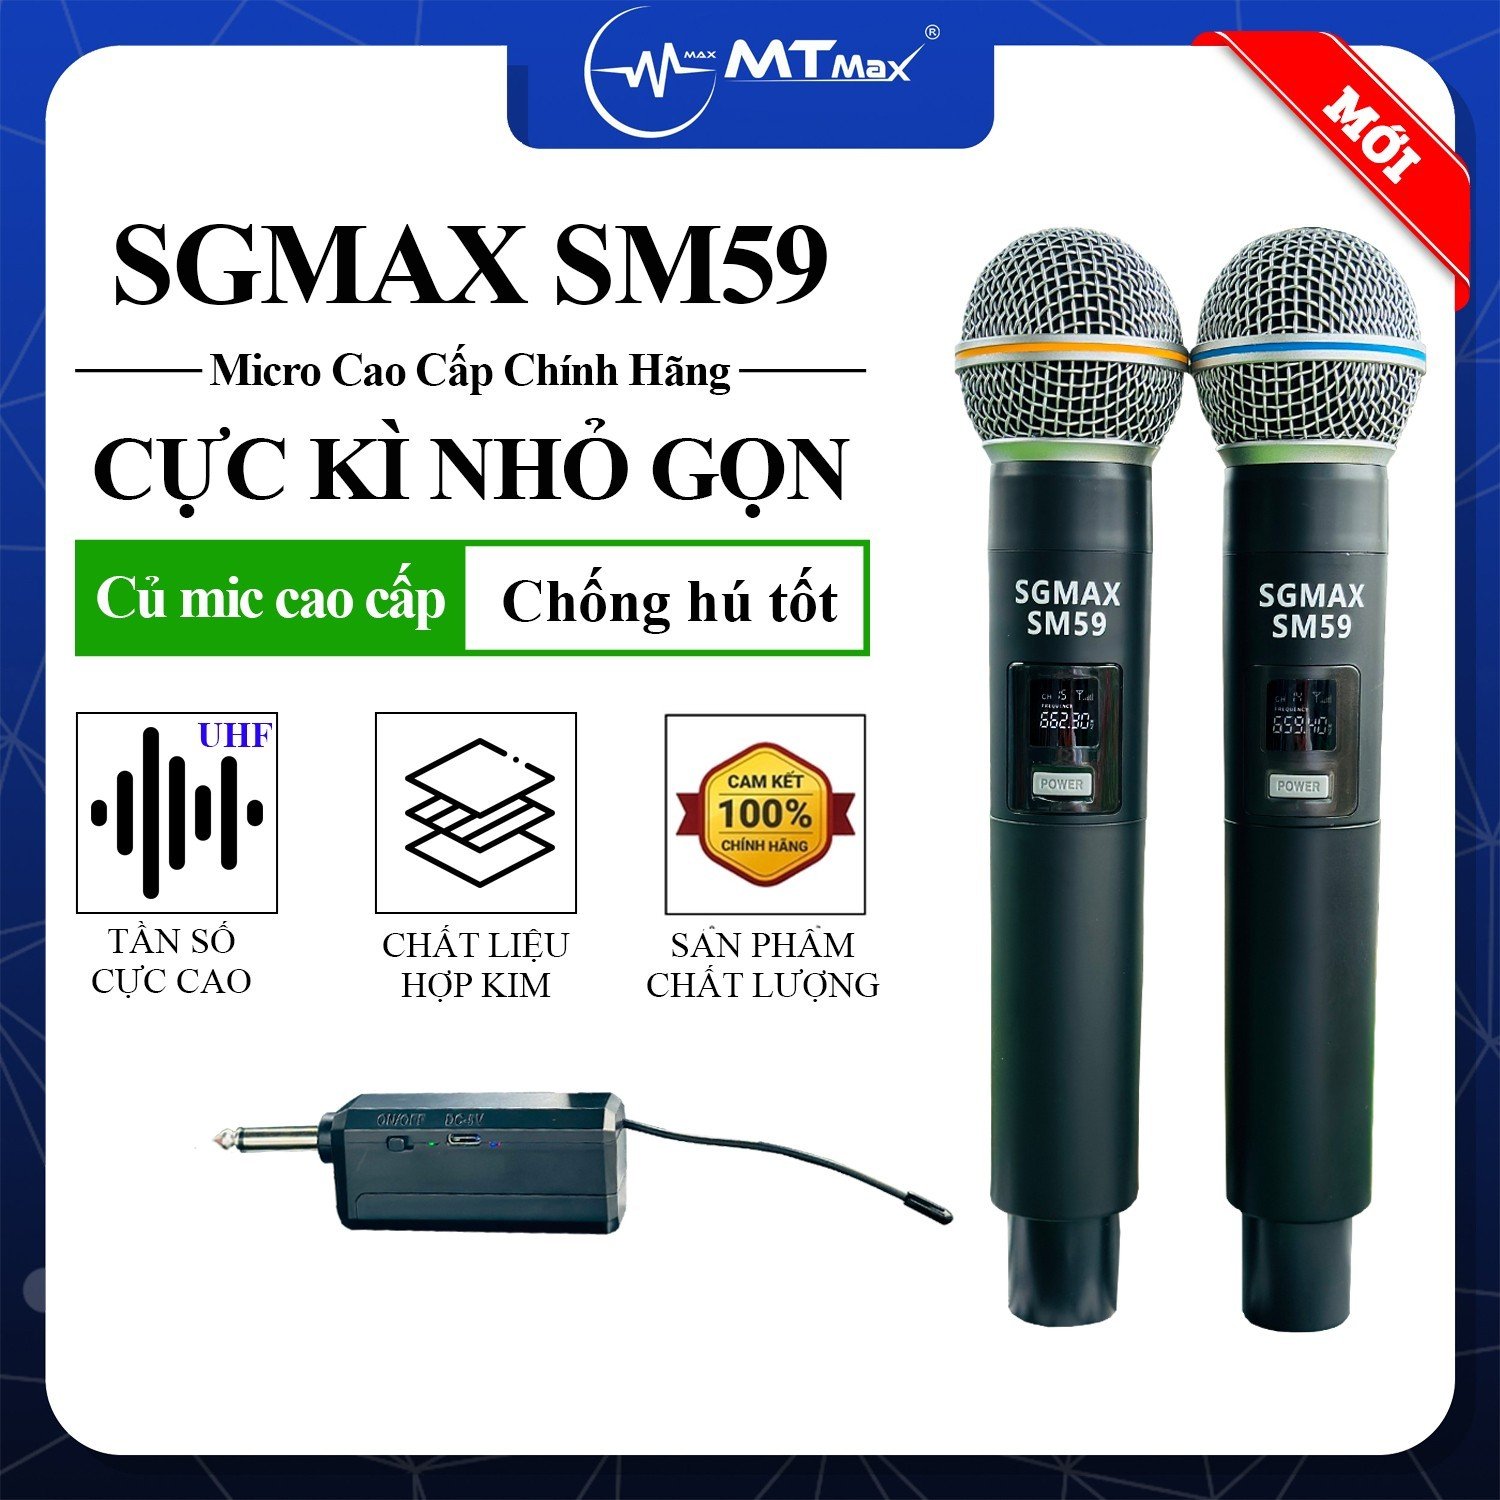 SGMax SM59- Micro Karaoke Không Dây Chính Hãng Chống Hù Rè Tốt Hỗ Trợ Nâng Giọng Hát Khi Hát Sạc Pin Trực Tiếp Trên Micro Bắt Sóng Xa Đến 15m hàng chính hãng